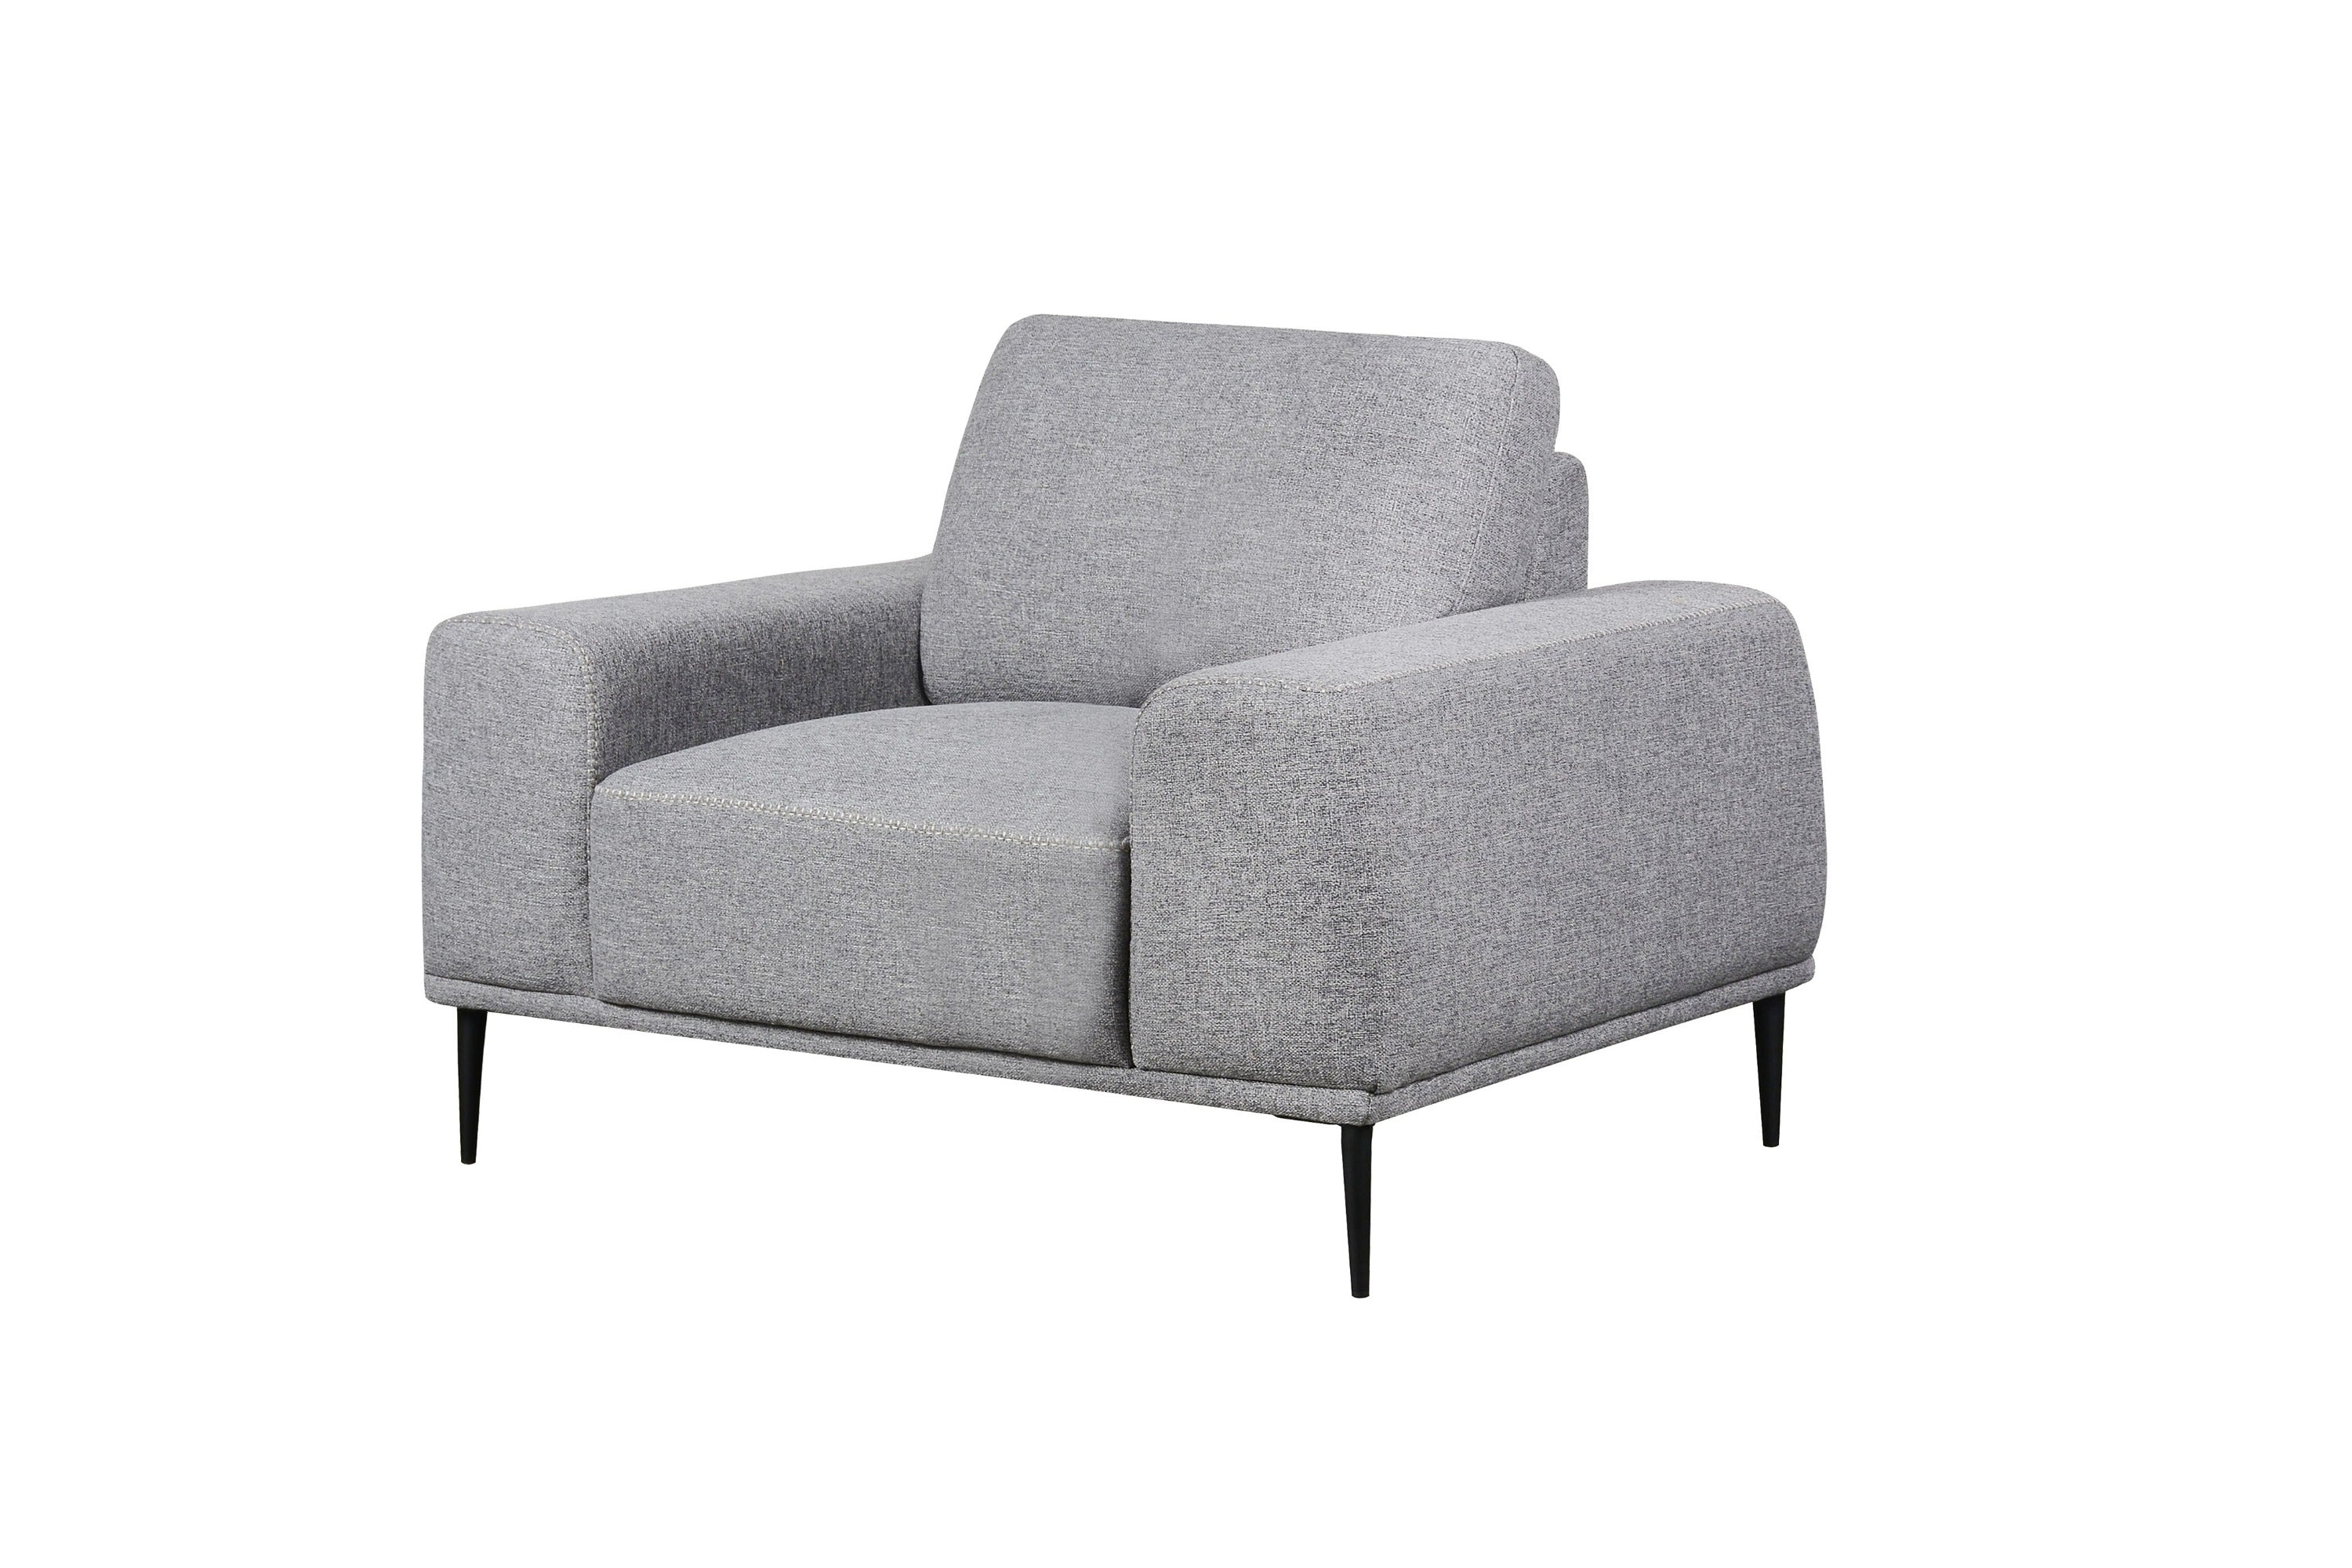 Divani Casa Fonda - Modern Fabric Chair-Accent Chair-VIG-Wall2Wall Furnishings